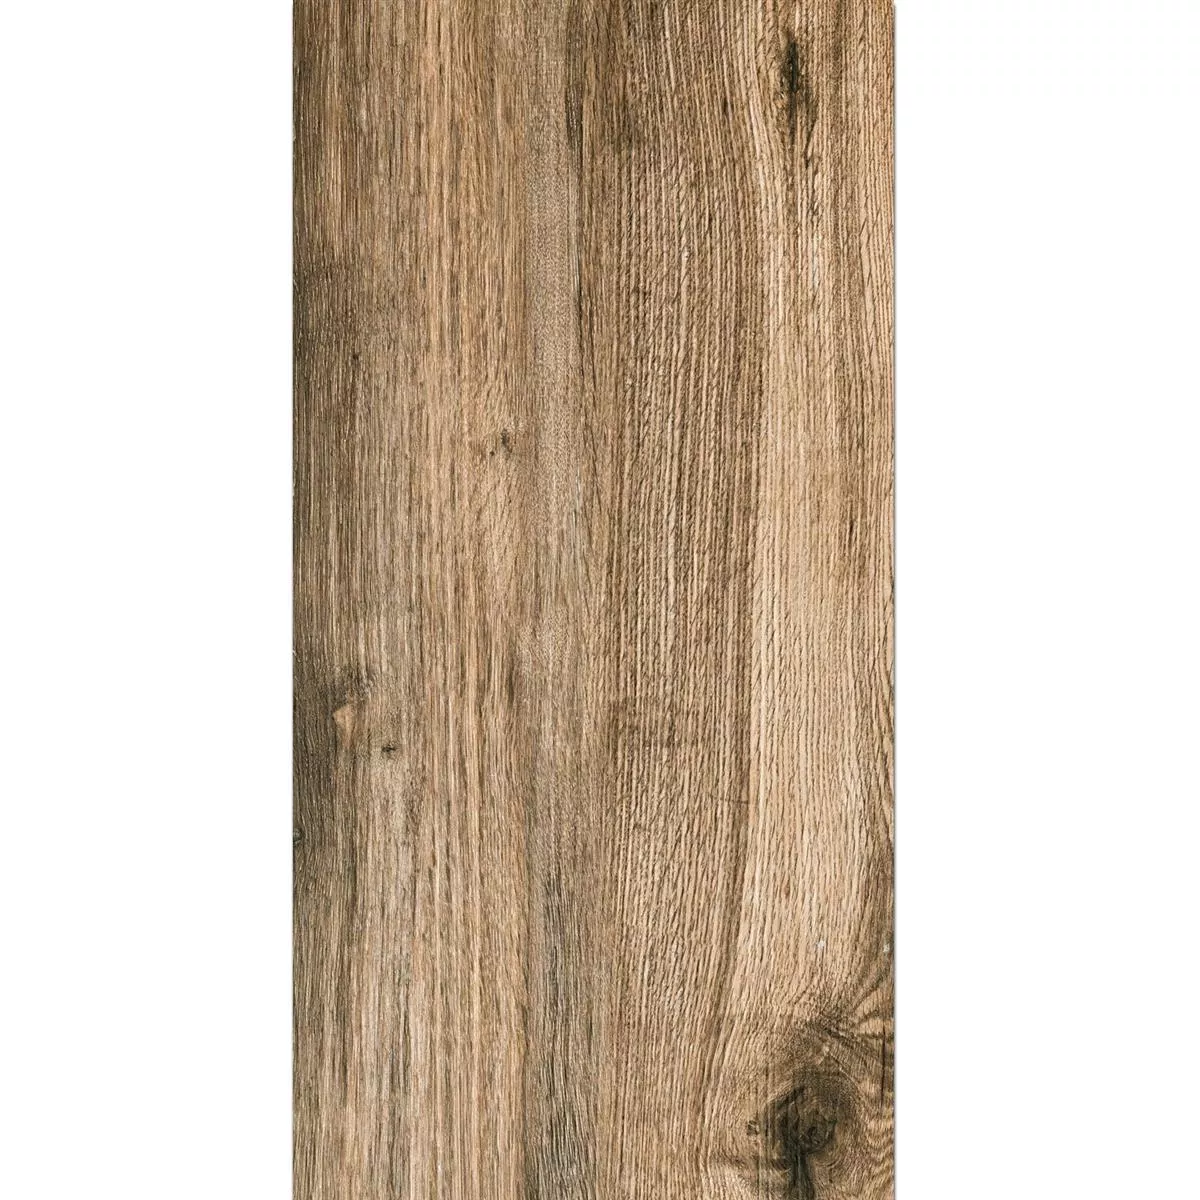 Próbka Taras Płyta Starwood Wygląd Drewna Oak 45x90cm